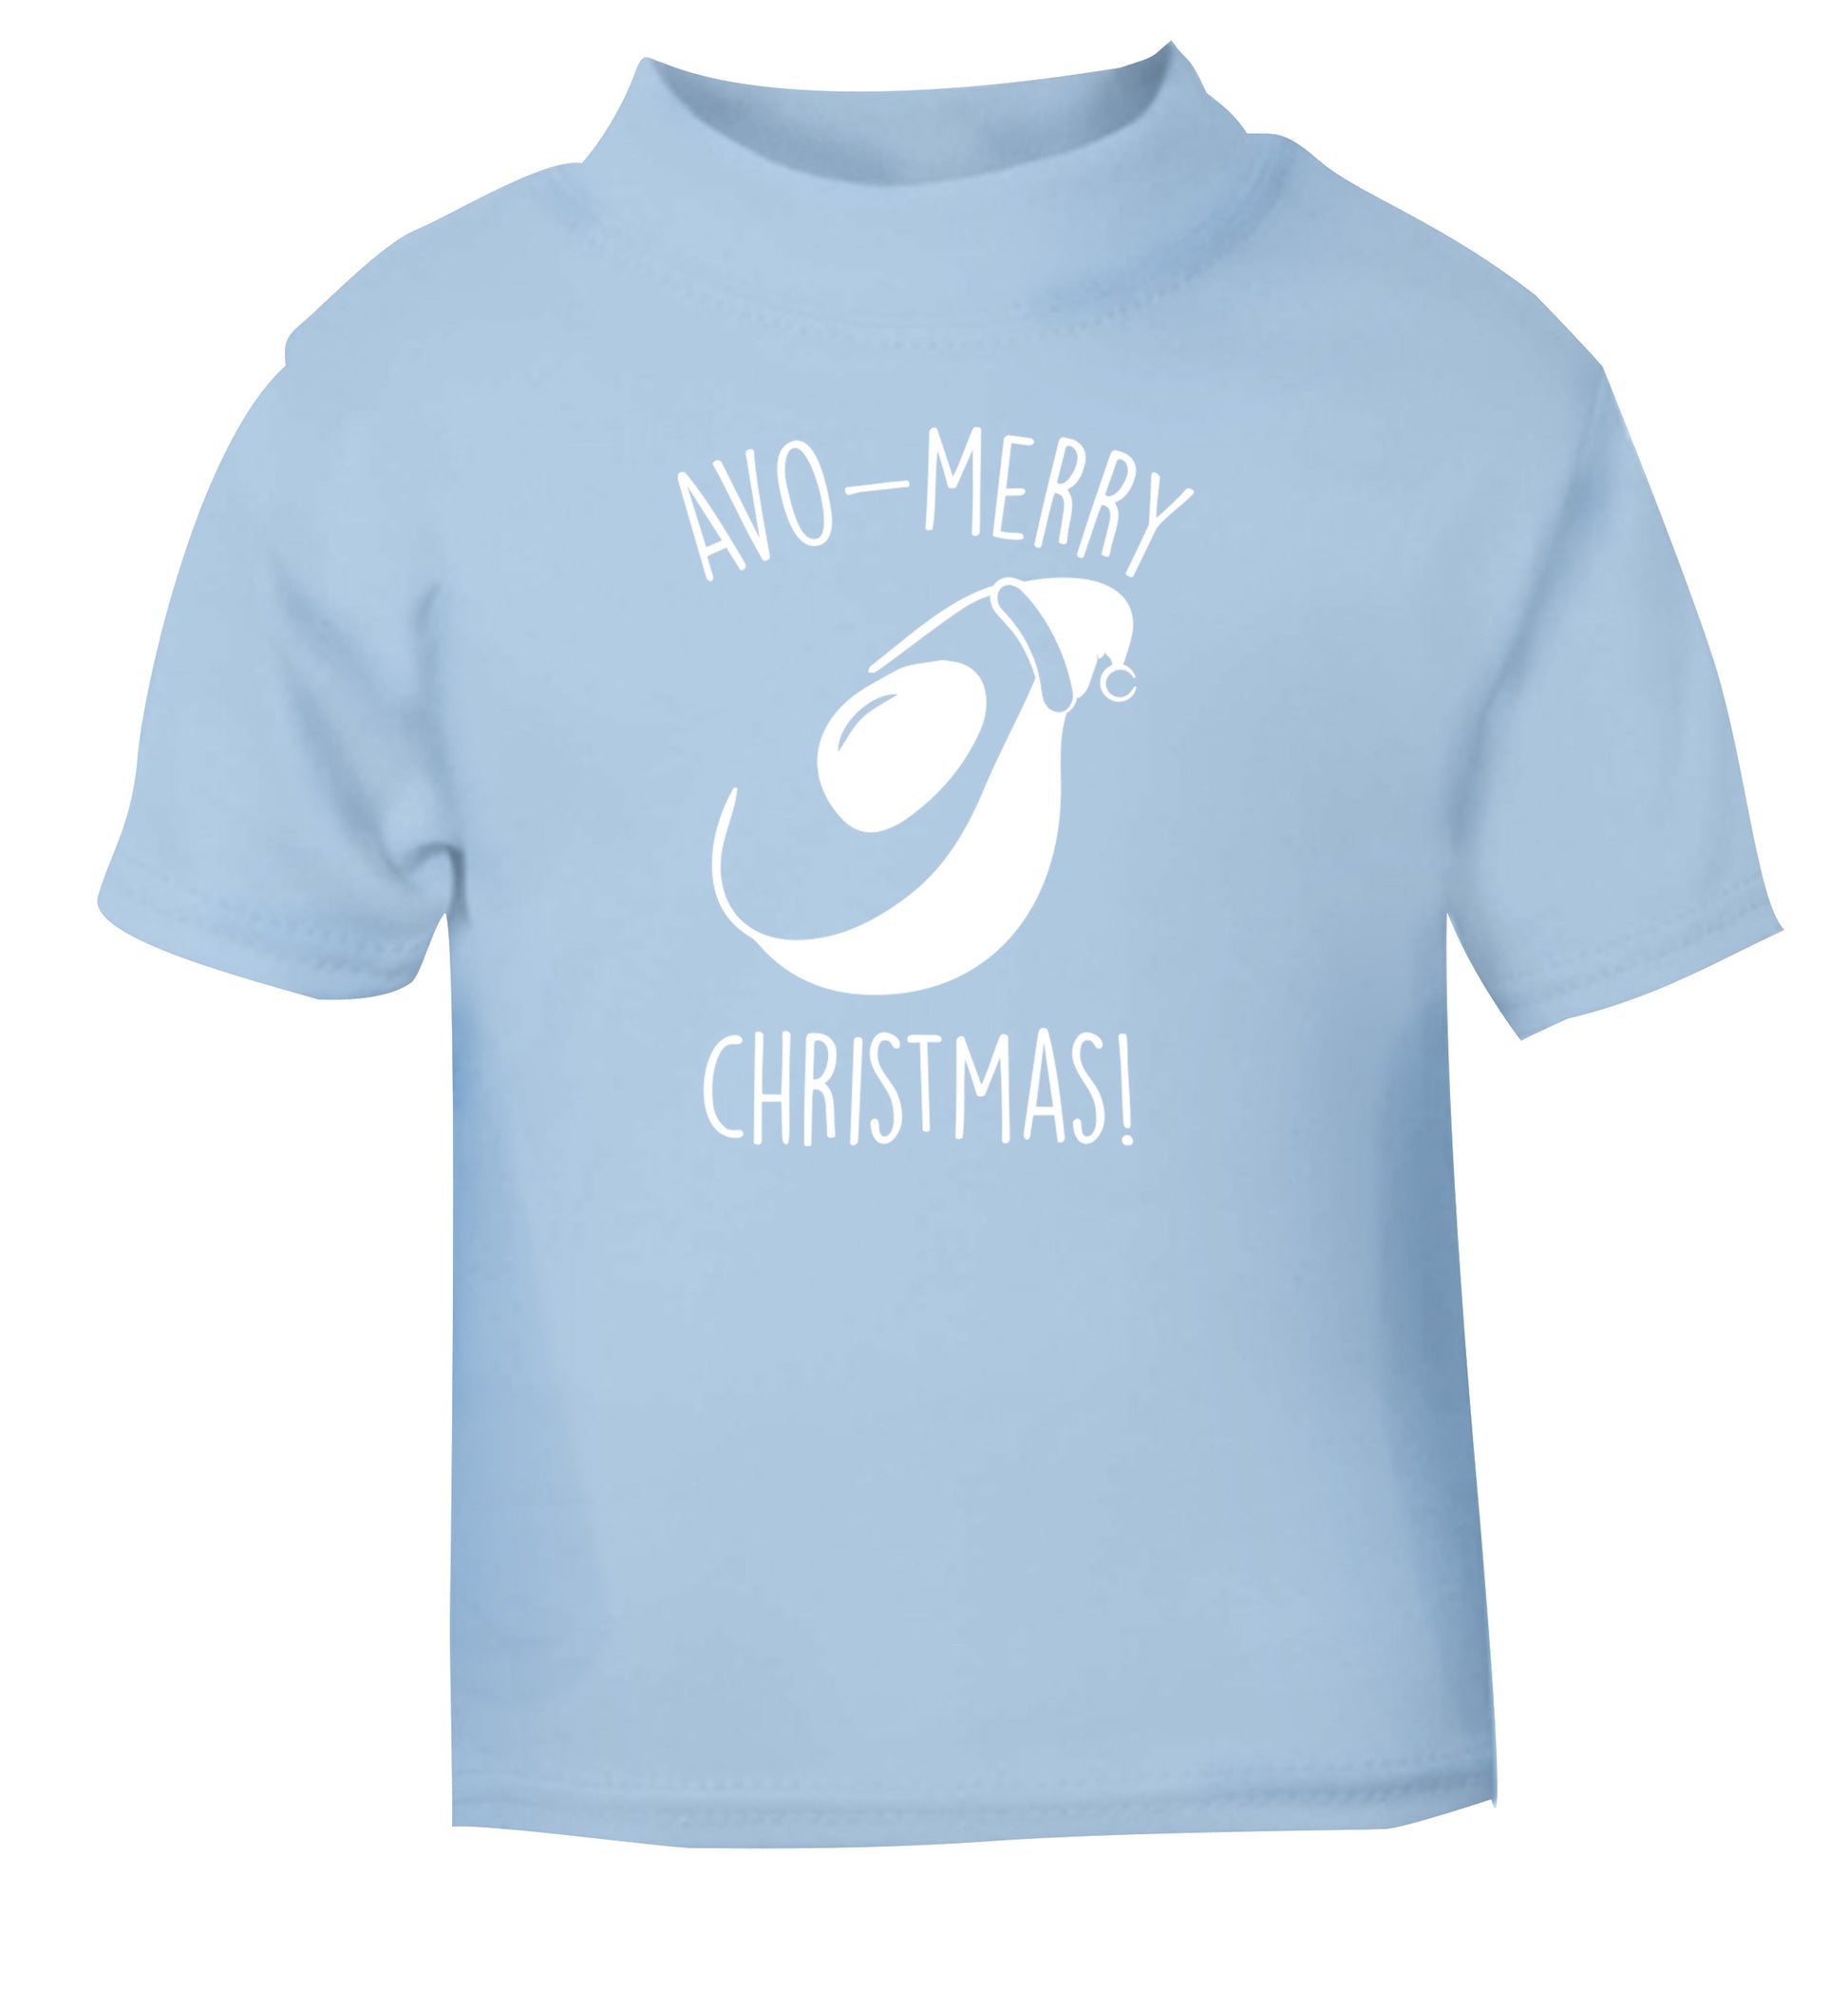 Avo-Merry Christmas light blue Baby Toddler Tshirt 2 Years